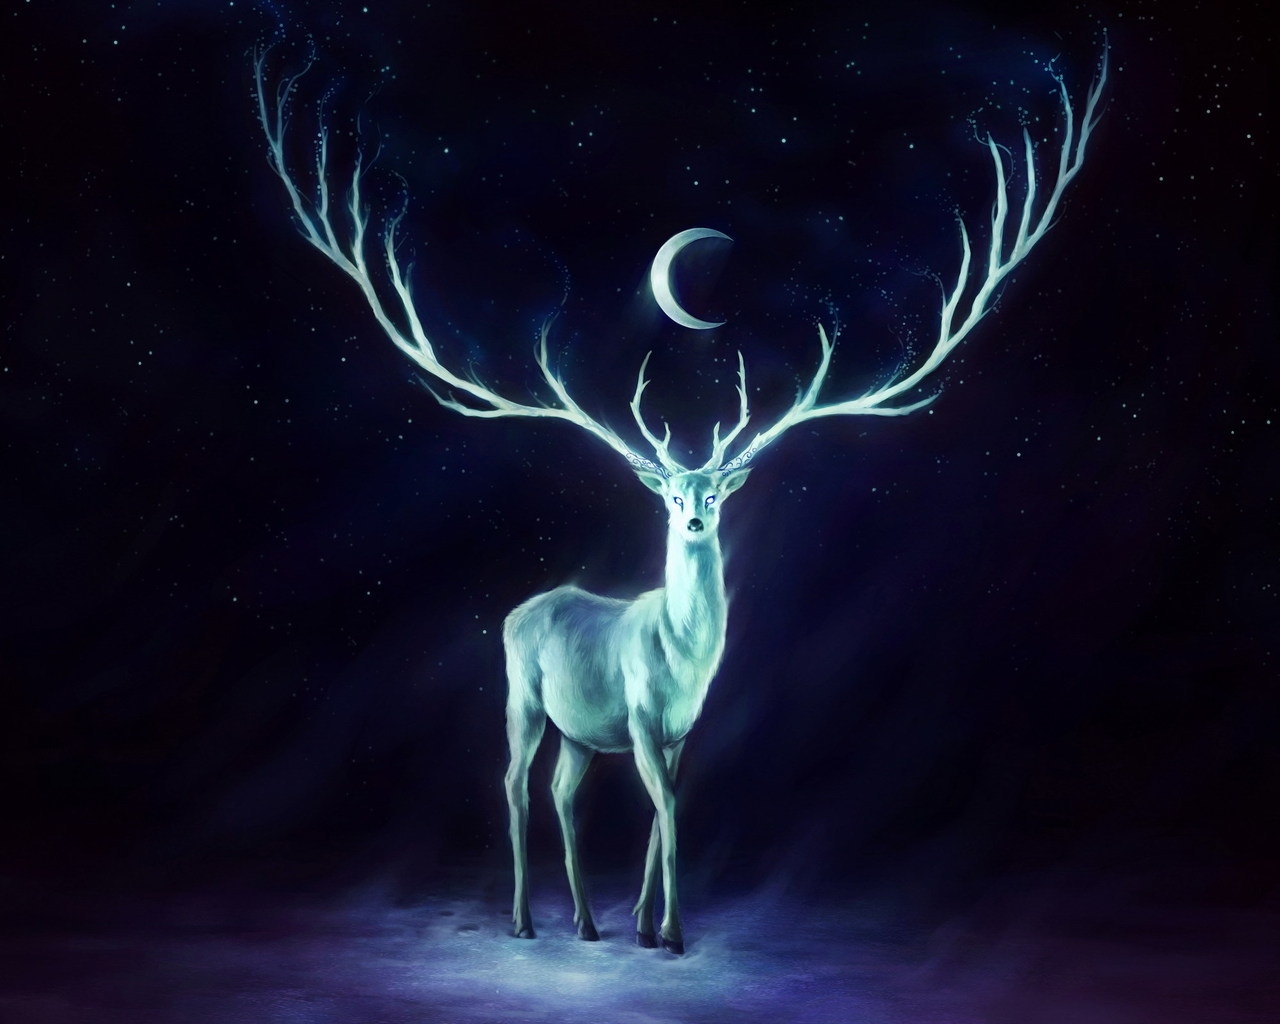 White Deer for 1280 x 1024 resolution